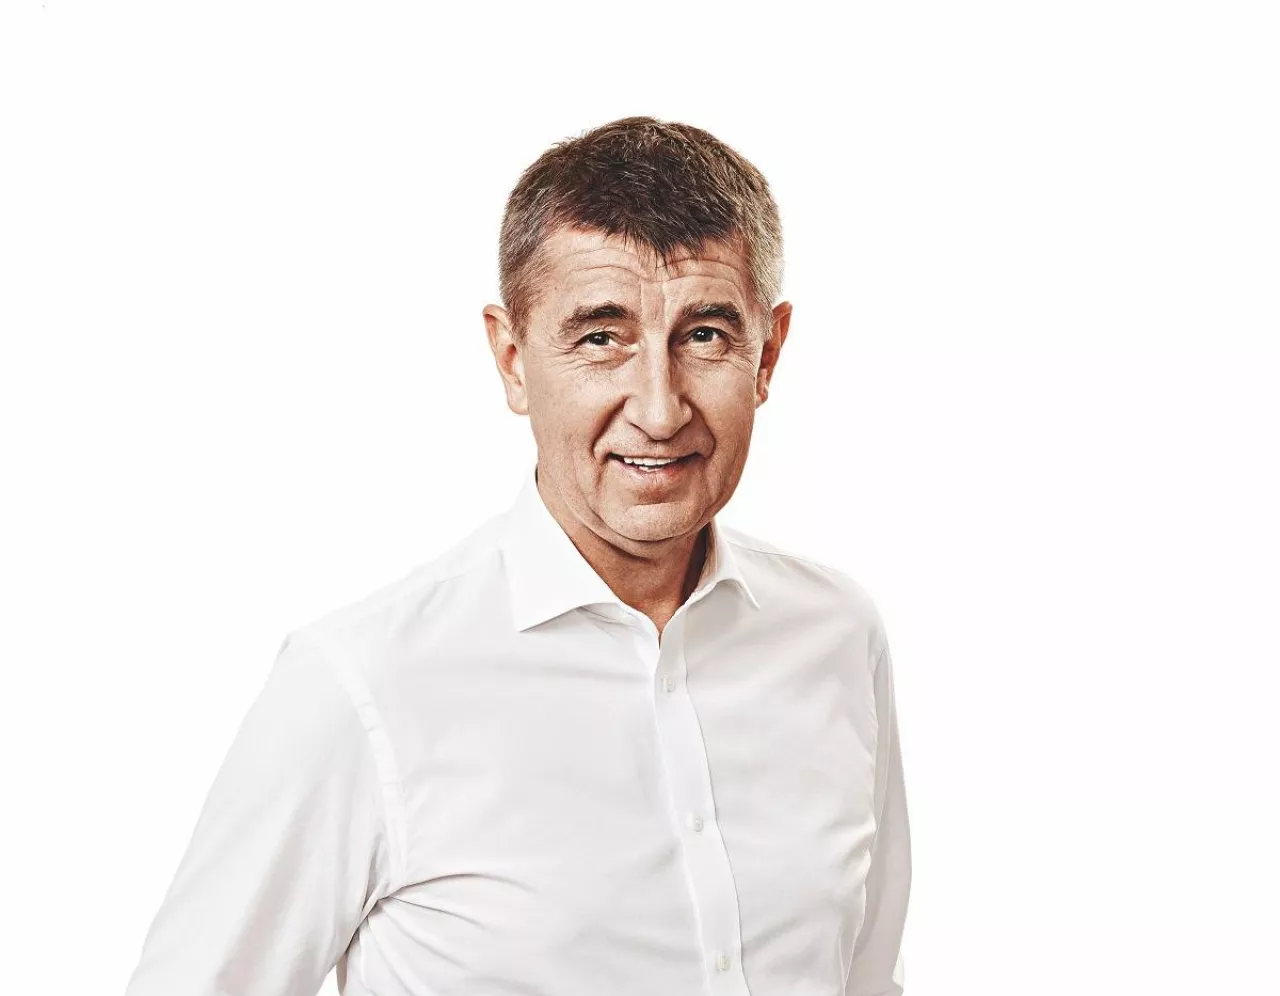 Andrej Babiš, czeski przedsiębiorca i szef opozycyjnej partii ANO